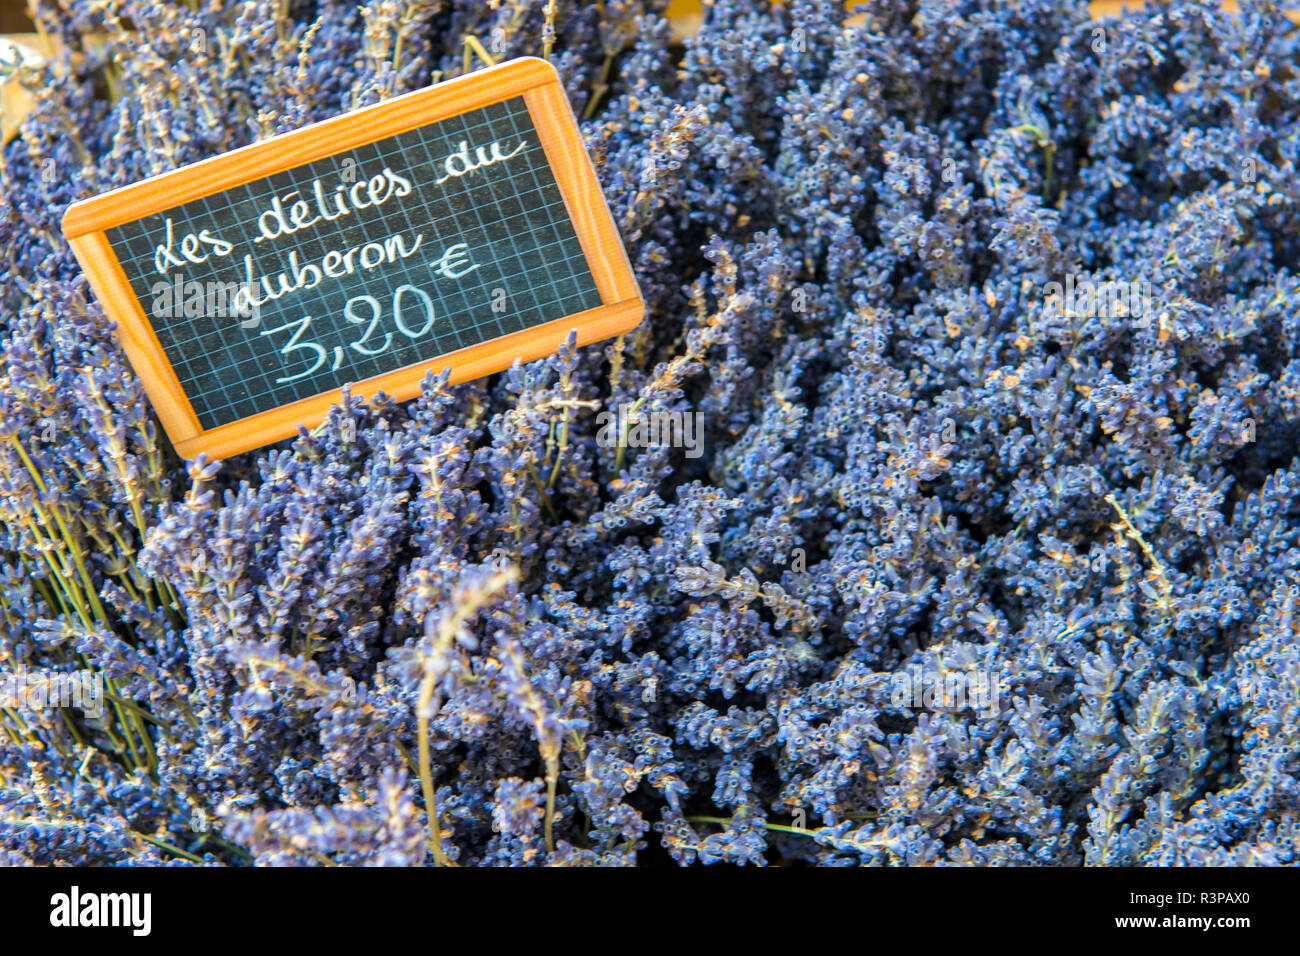 Lavender for sale, Avignon, France, Europe Stock Photo